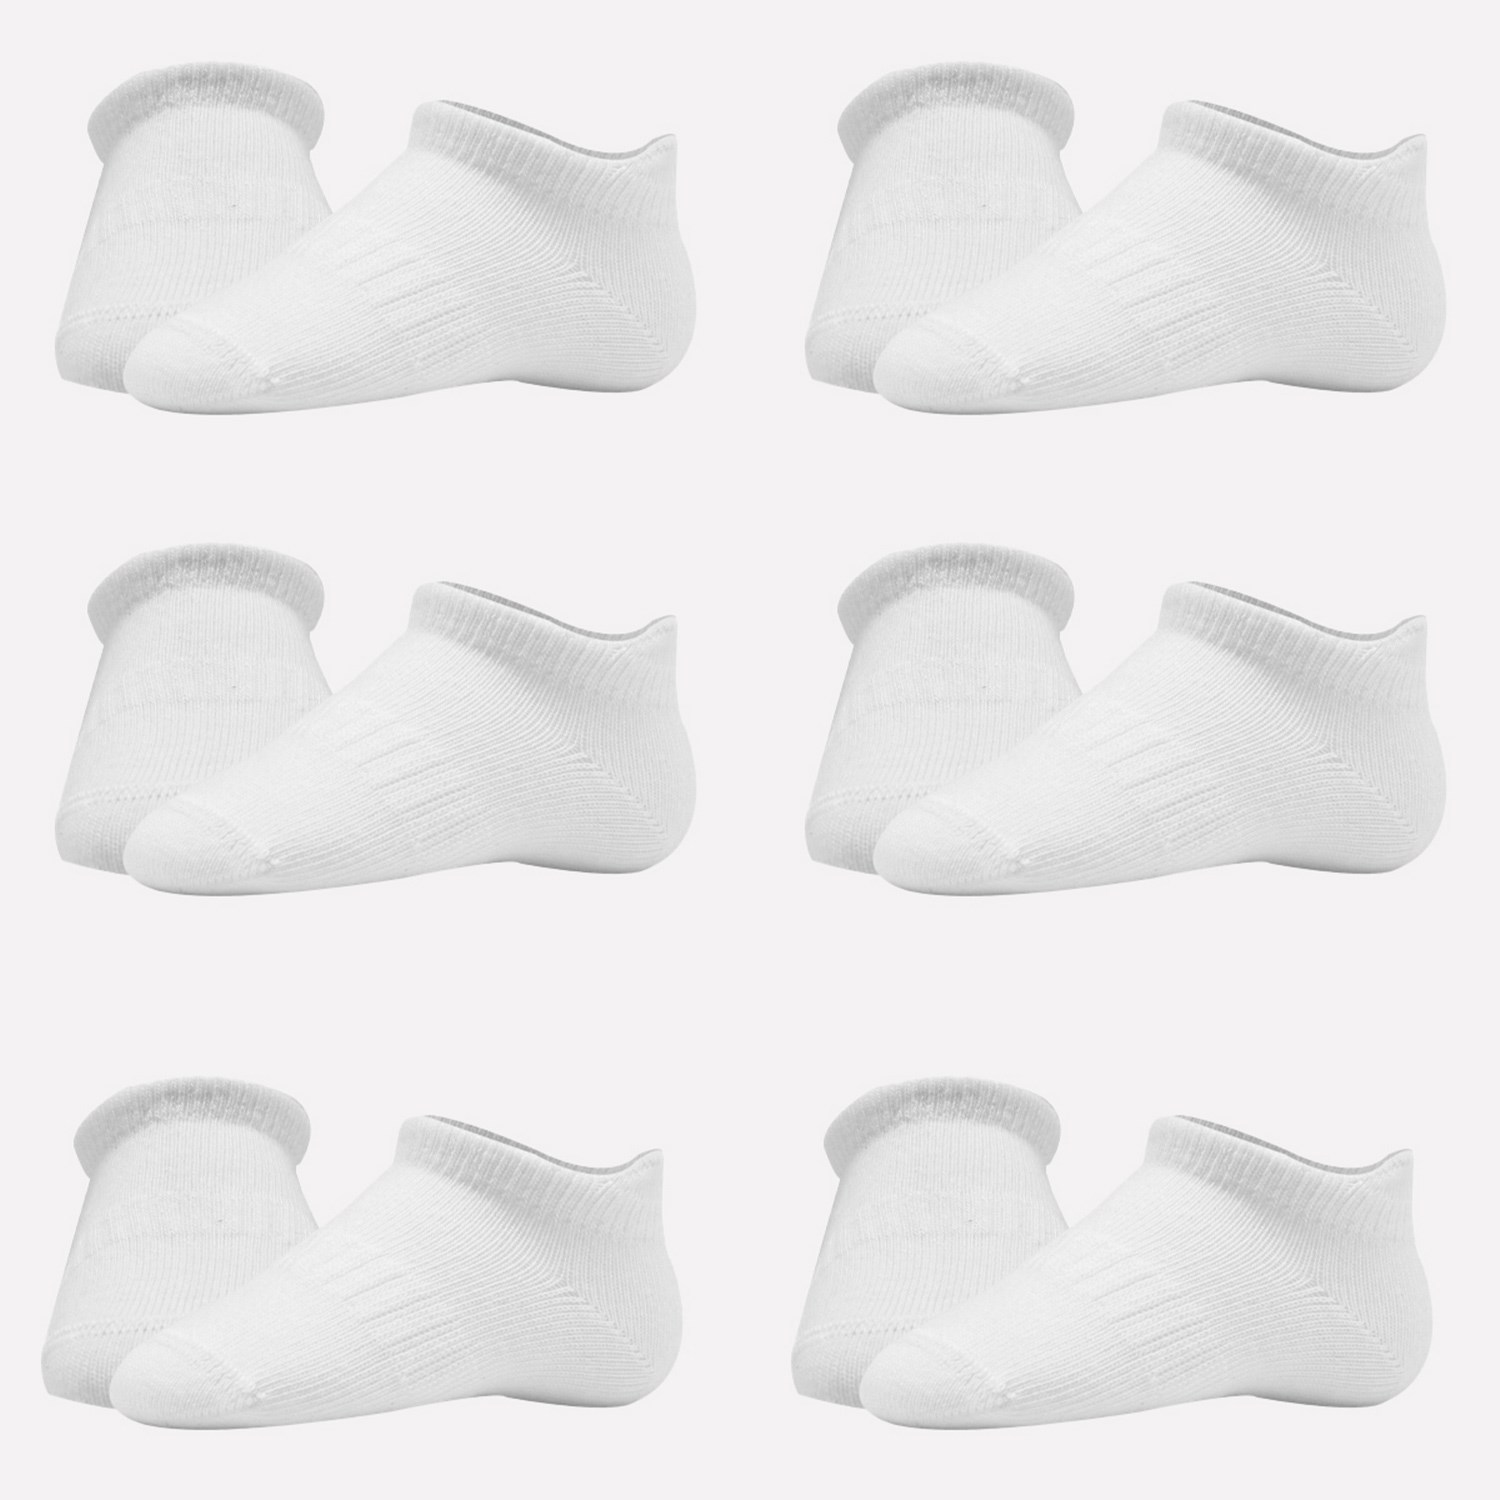 Bistyle 6'lı Sneakers Bebek Çorabı 6108 Beyaz